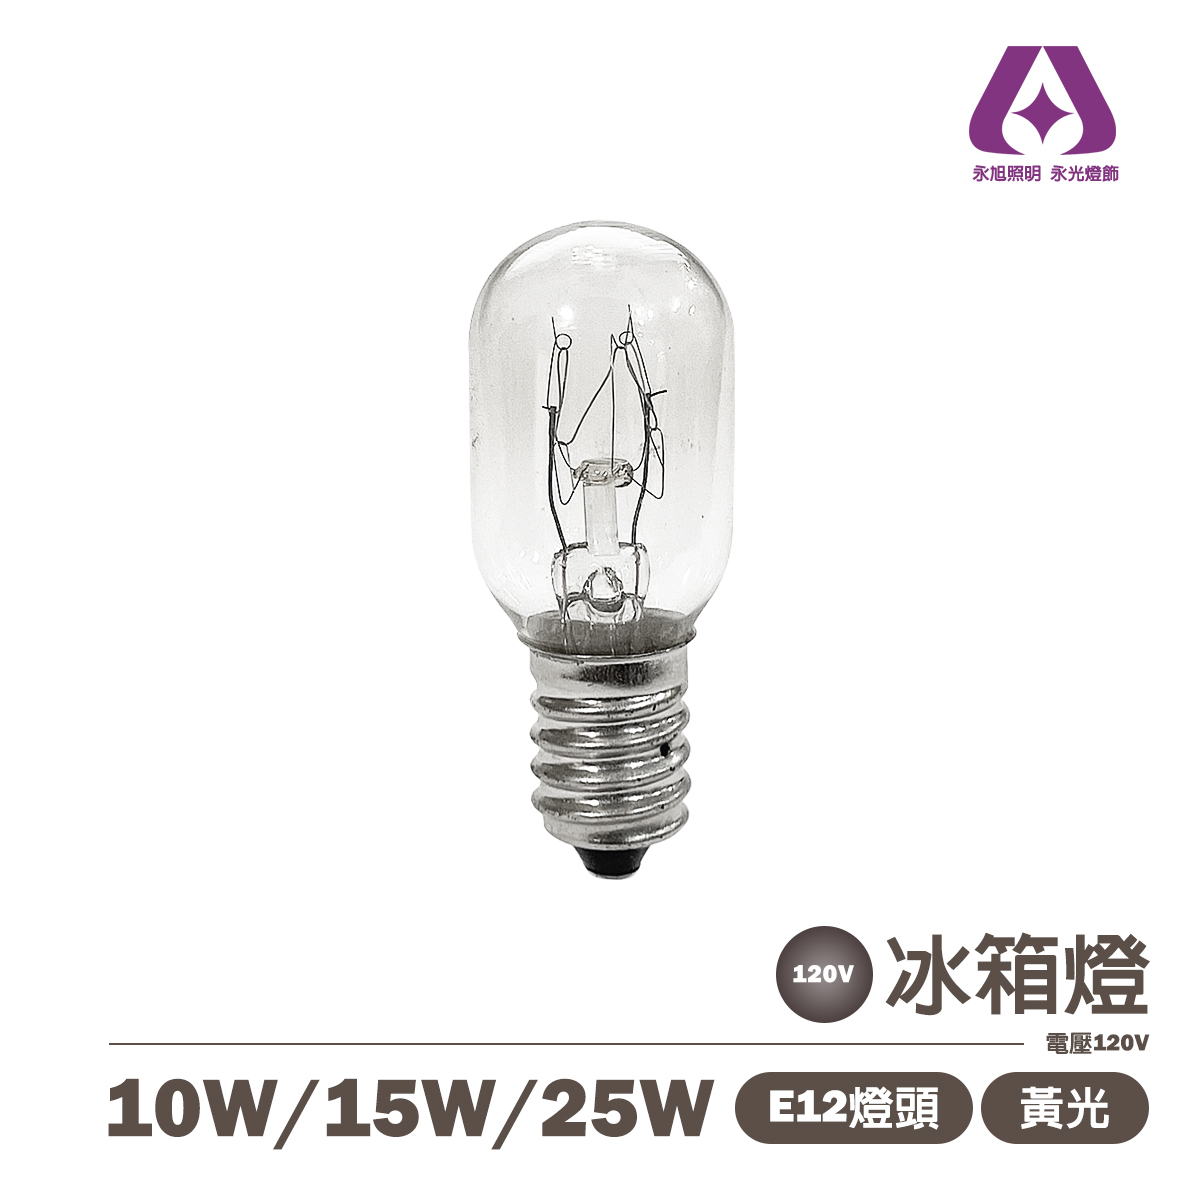 E12 10W/15W/25W 傳統鎢絲燈泡 清泡 電壓110V 冰箱燈 鹽燈用